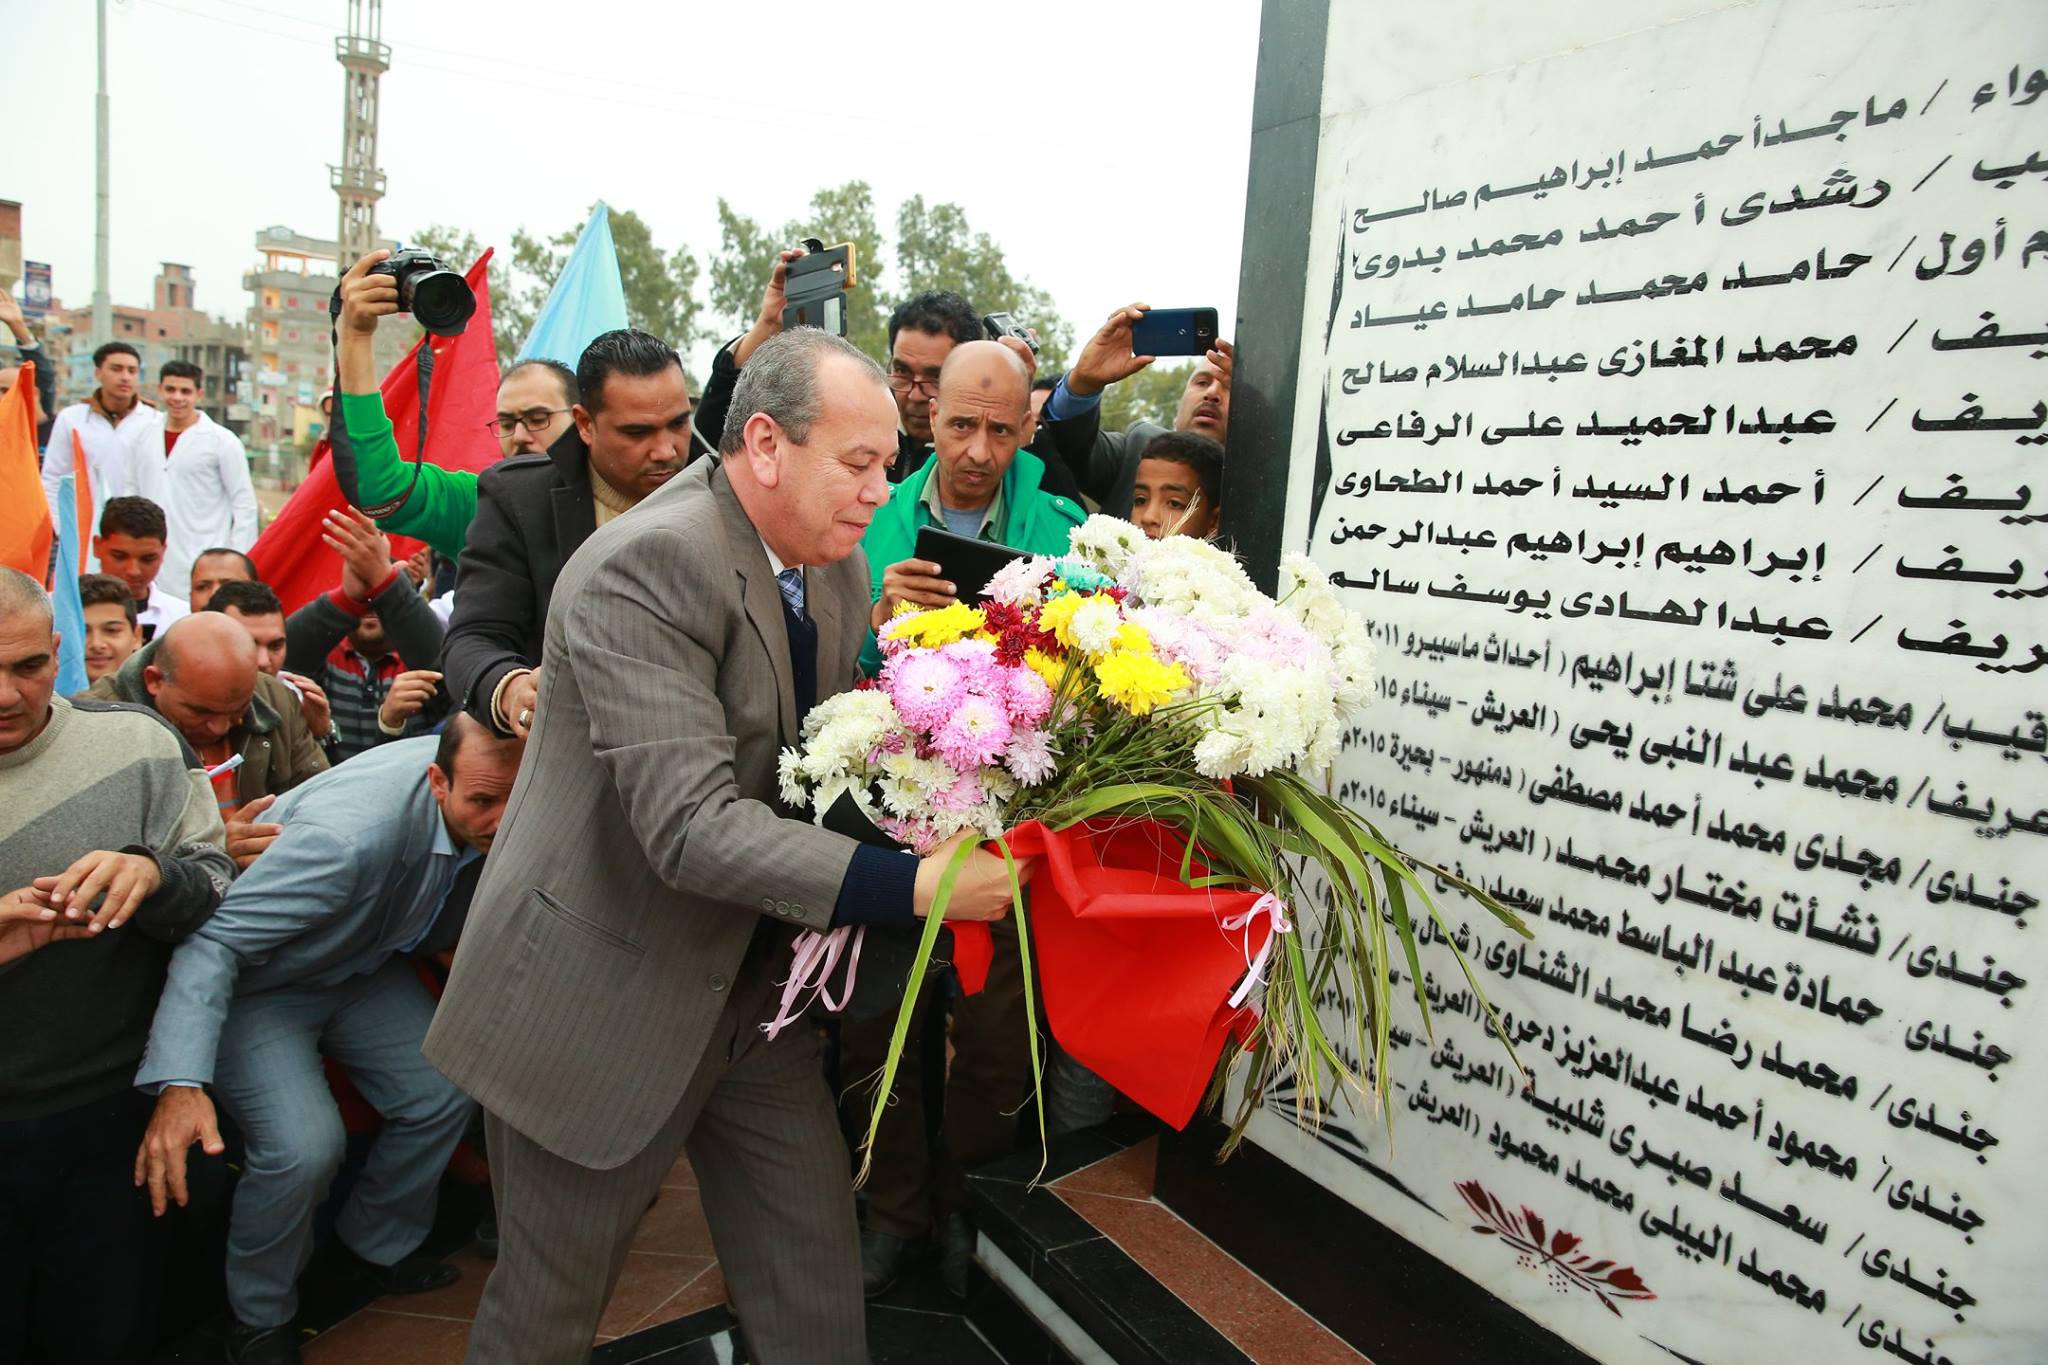   بالصور|| محافظ كفر الشيخ يفتتح النصب التذكارى للشهداء بالحامول 